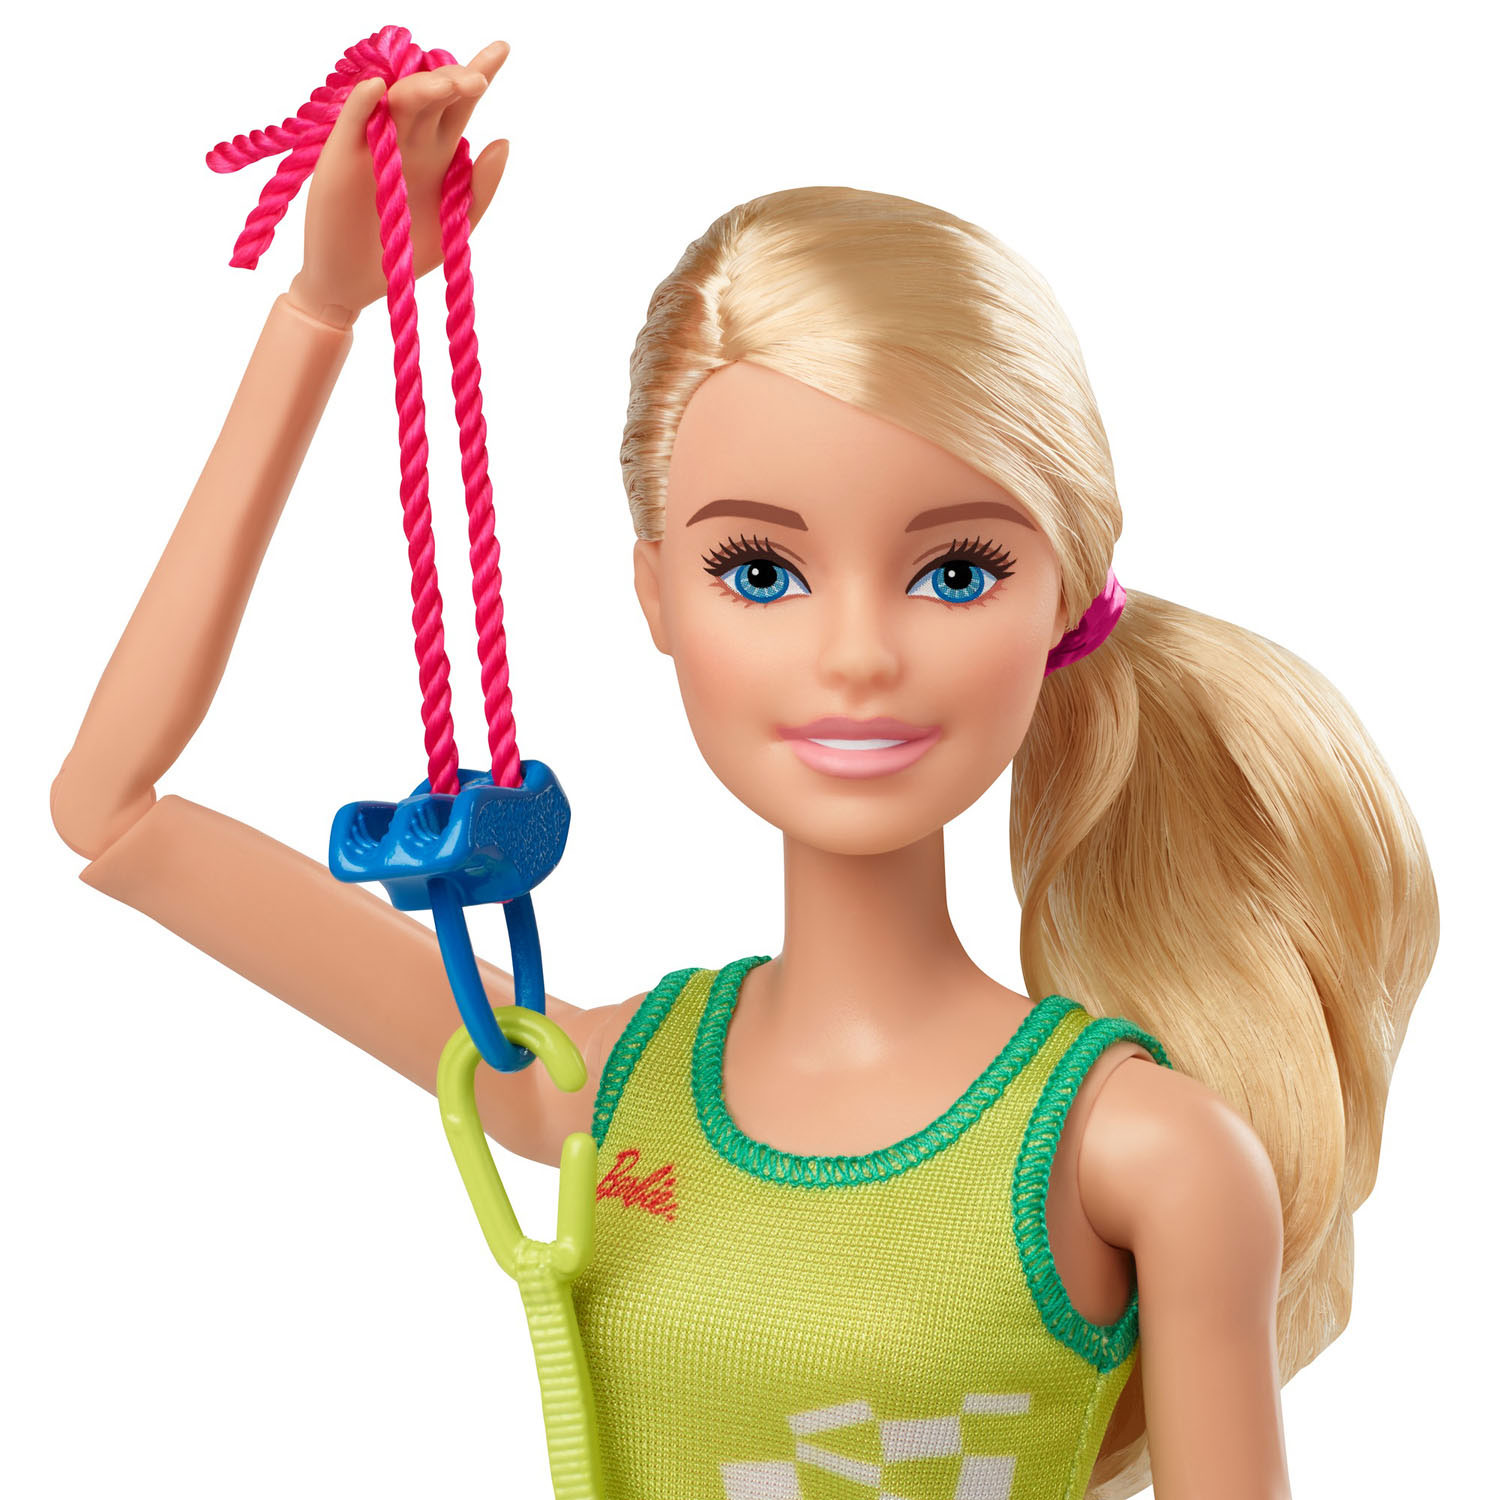 Barbie Olympische Spelen pop - Klimster